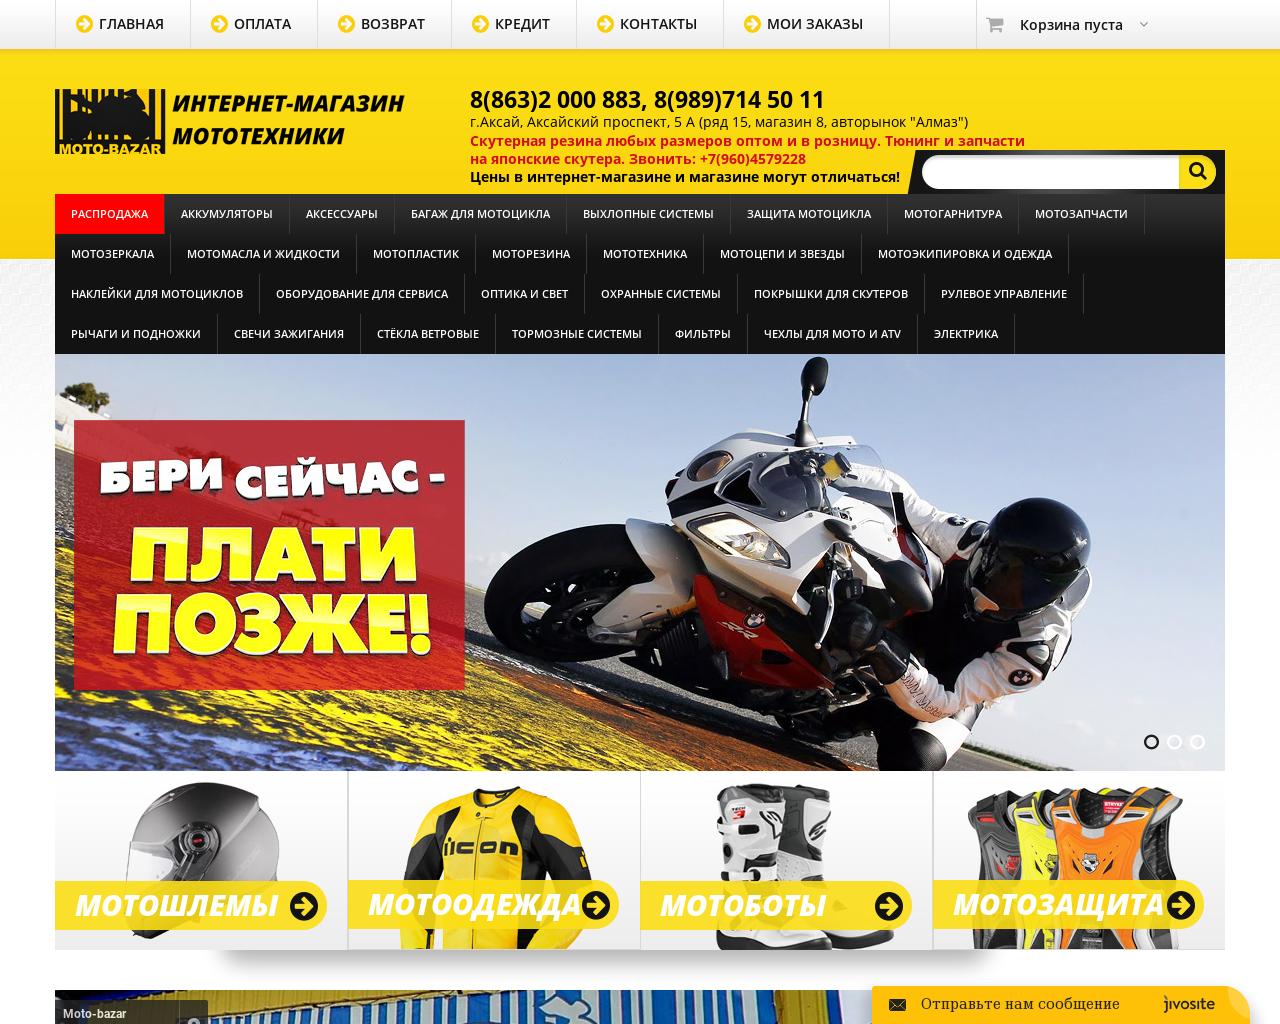 Изображение сайта moto-bazar61.ru в разрешении 1280x1024